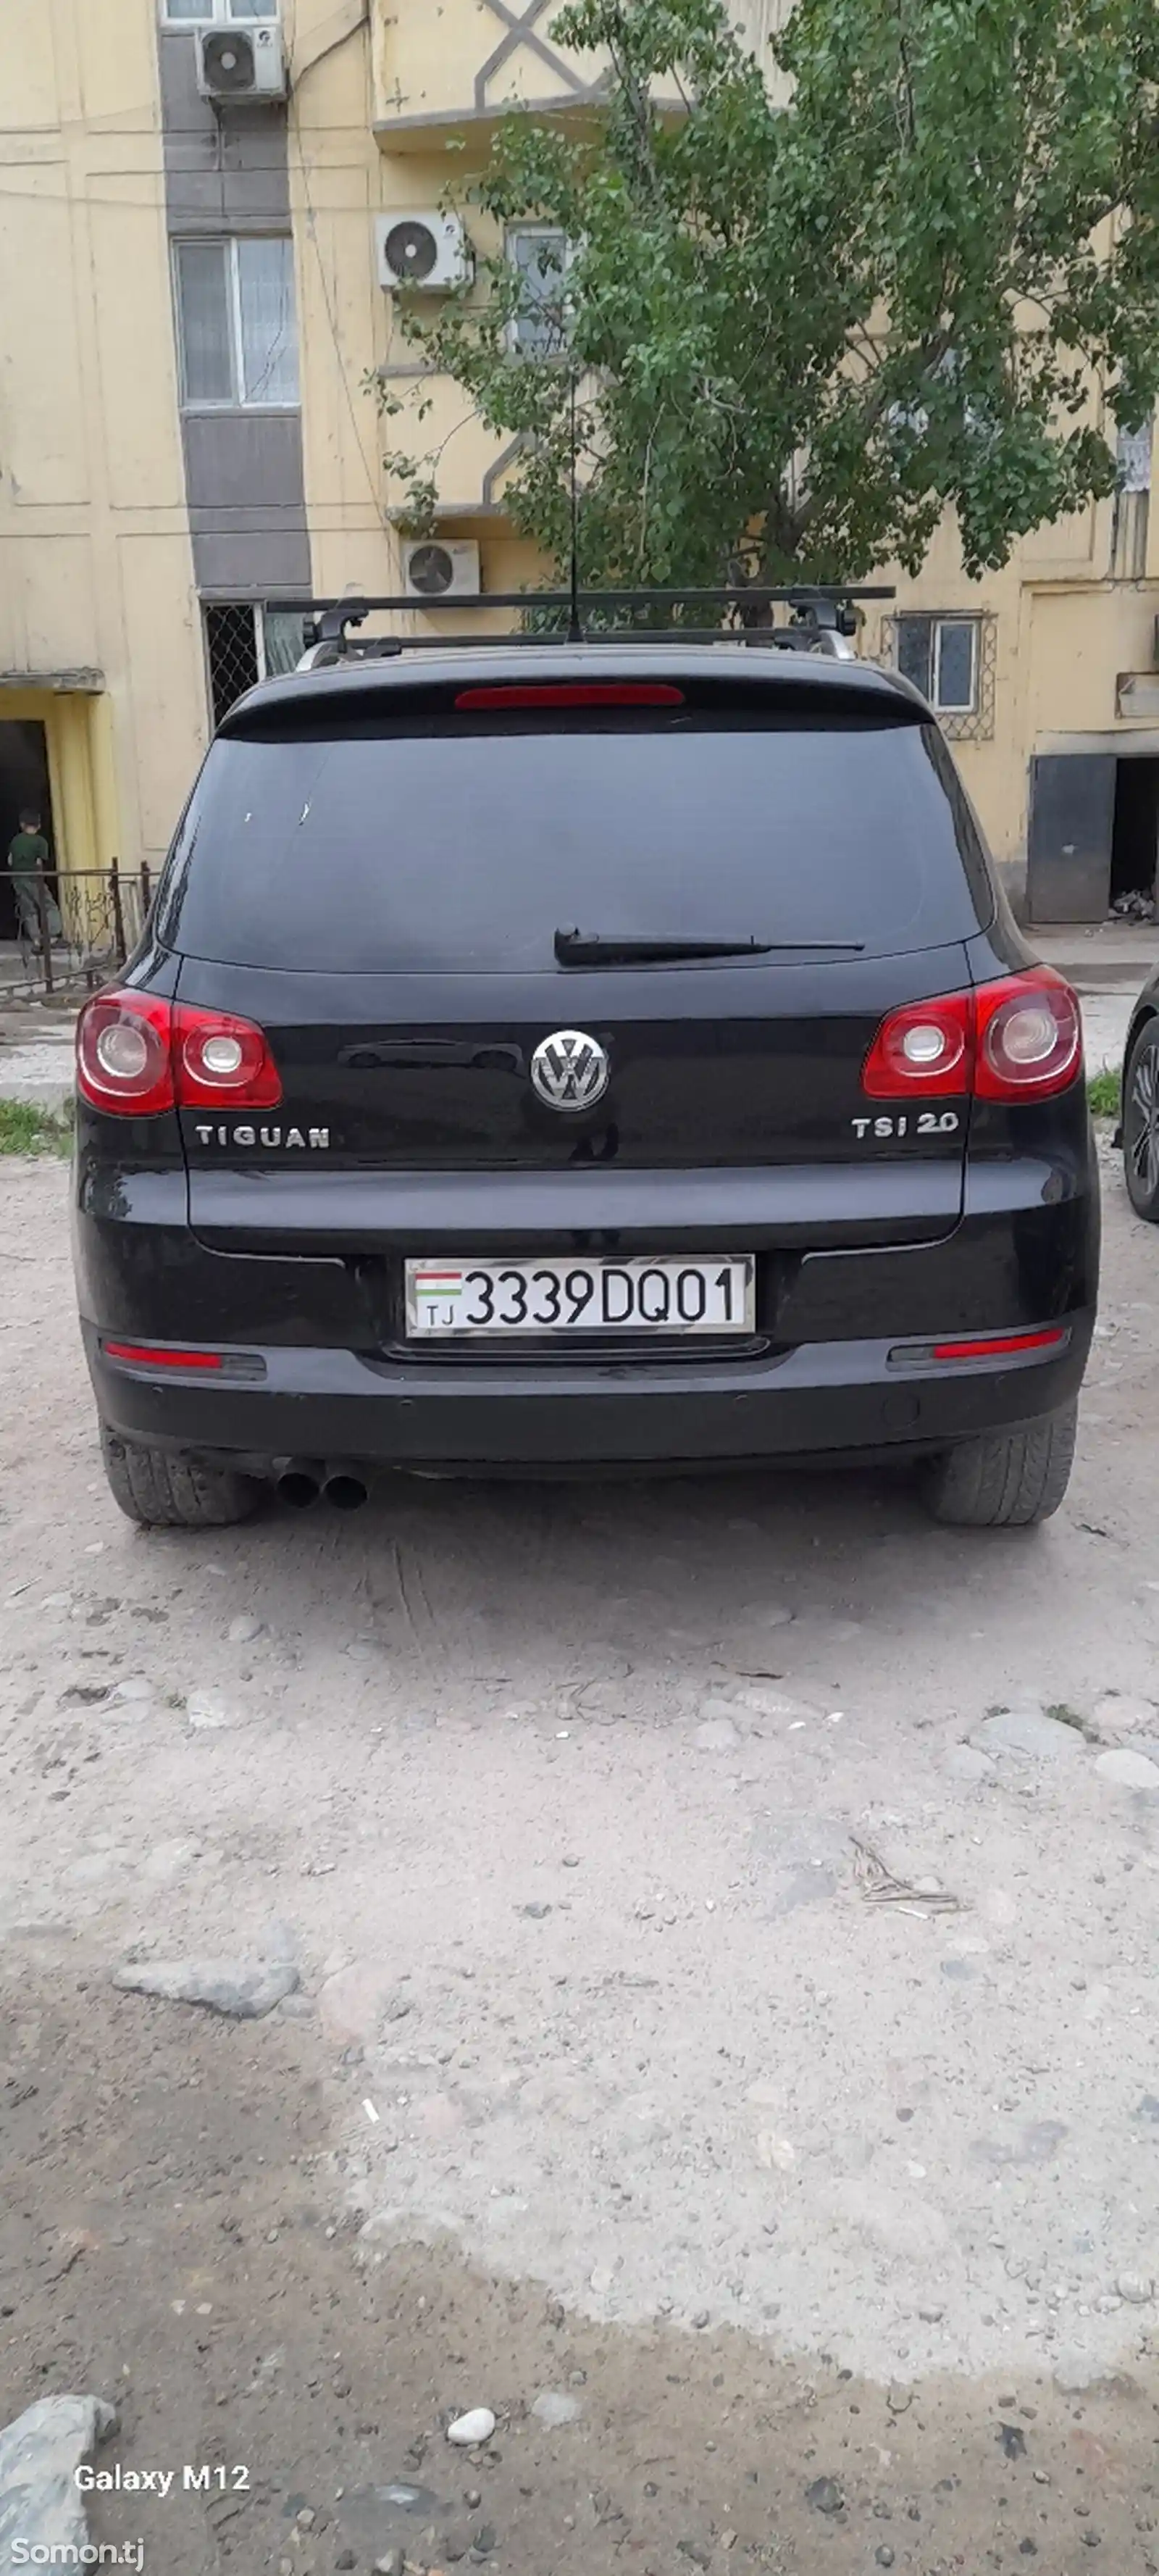 Volkswagen Tiguan, 2009-2